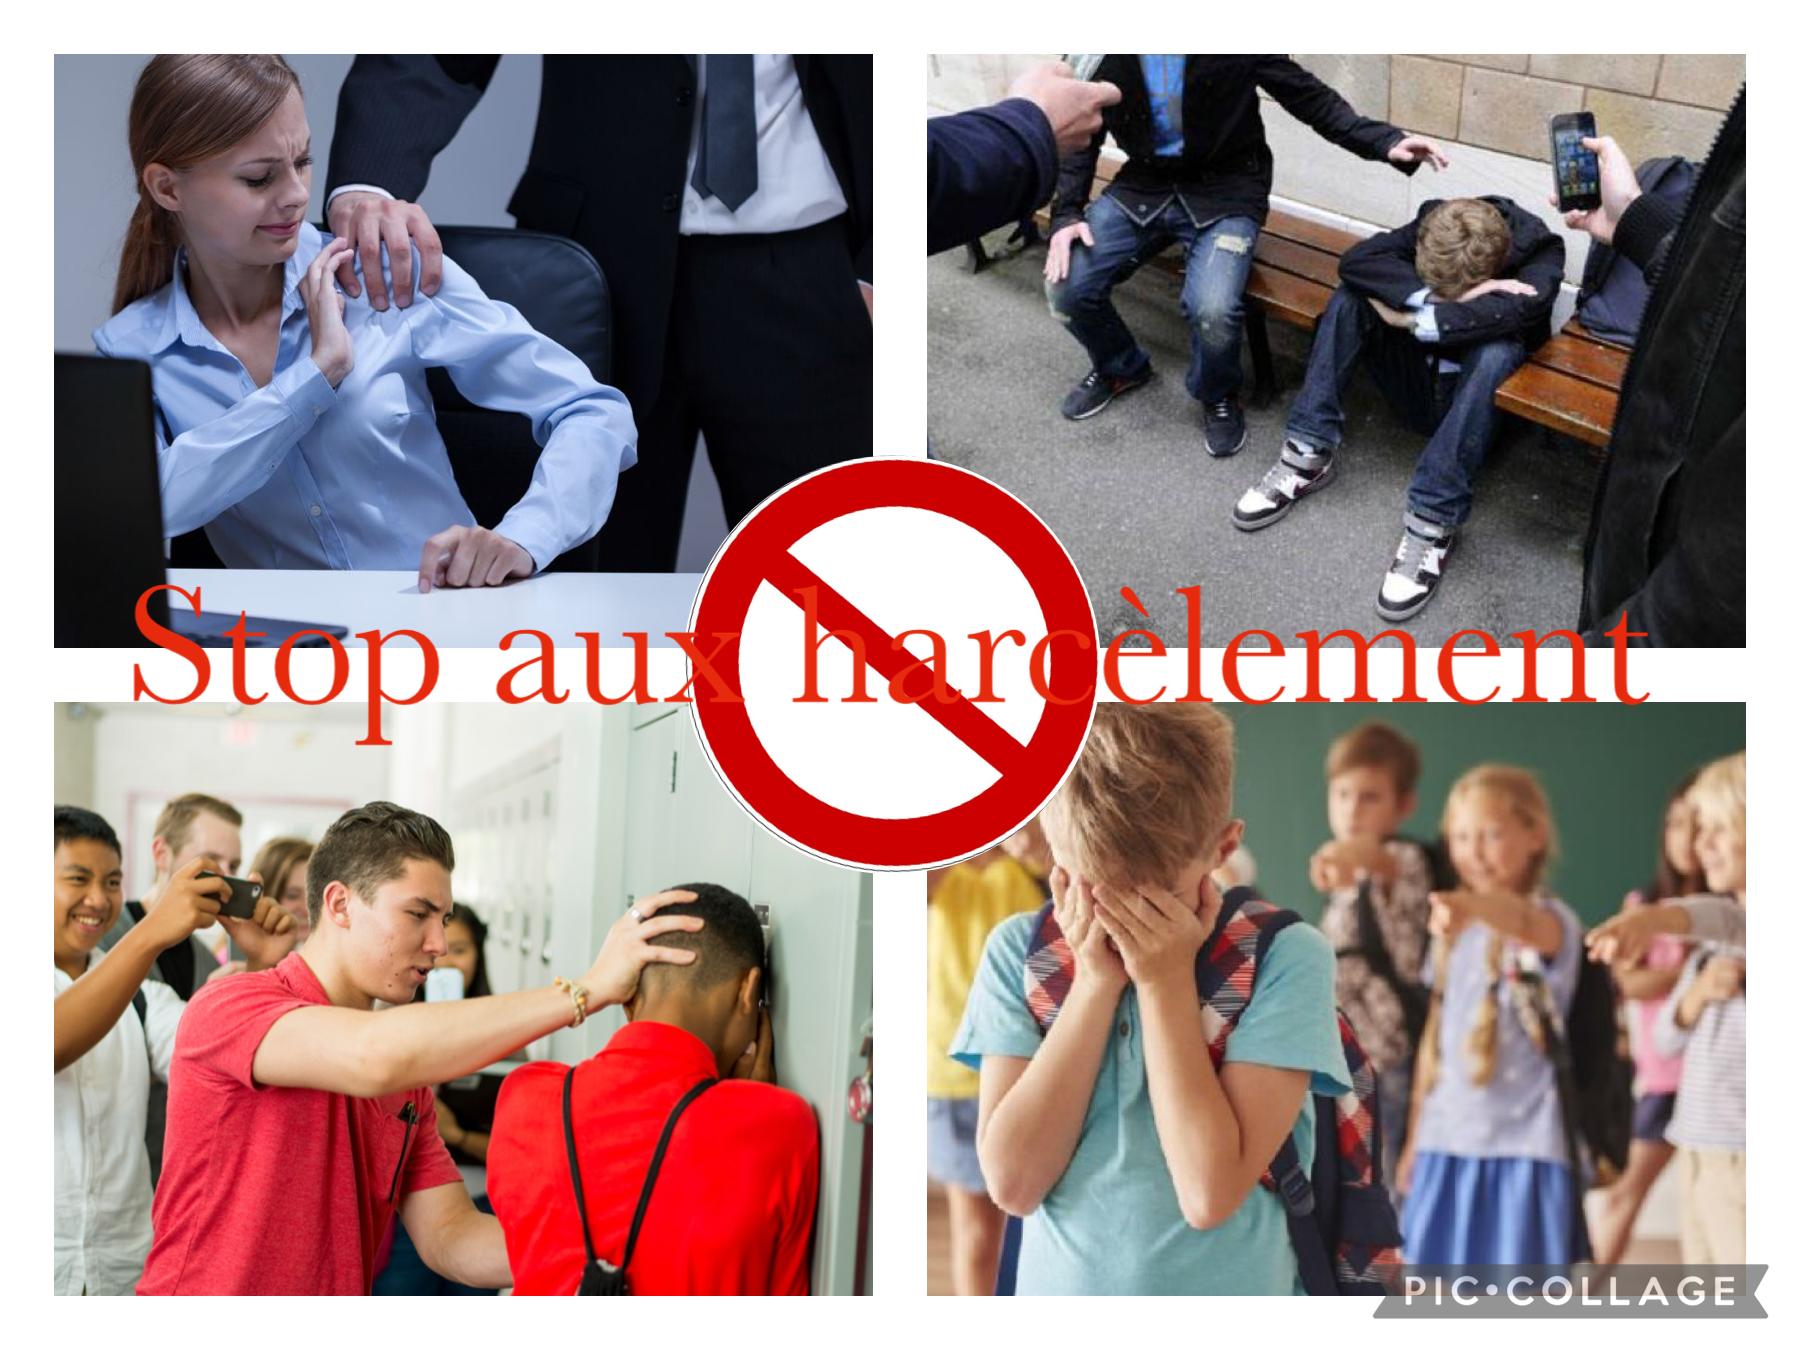 Stop aux harcèlement c’est injuste ça fait du mal on dit tous stop ✋ au harcèlement 